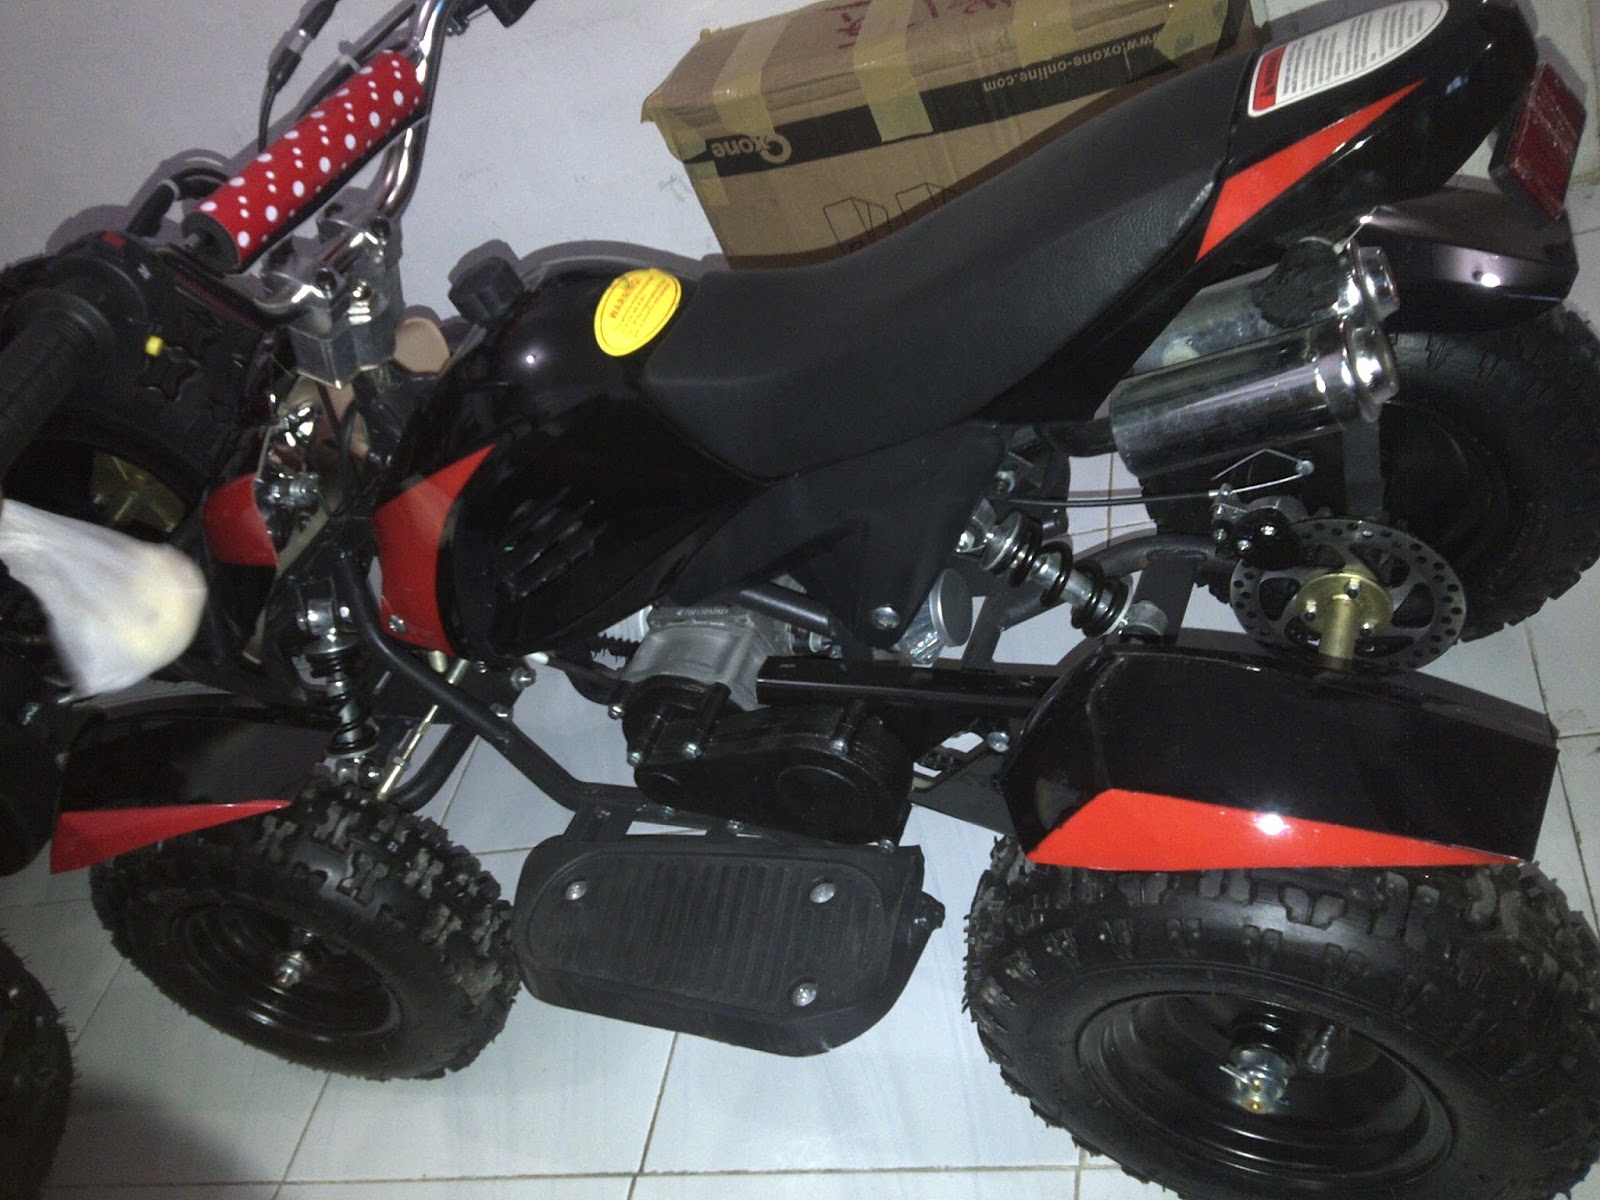 AGEN MOTOR MINI ATV 50 CC INDONESIA 082131404044 MOTOR MINI